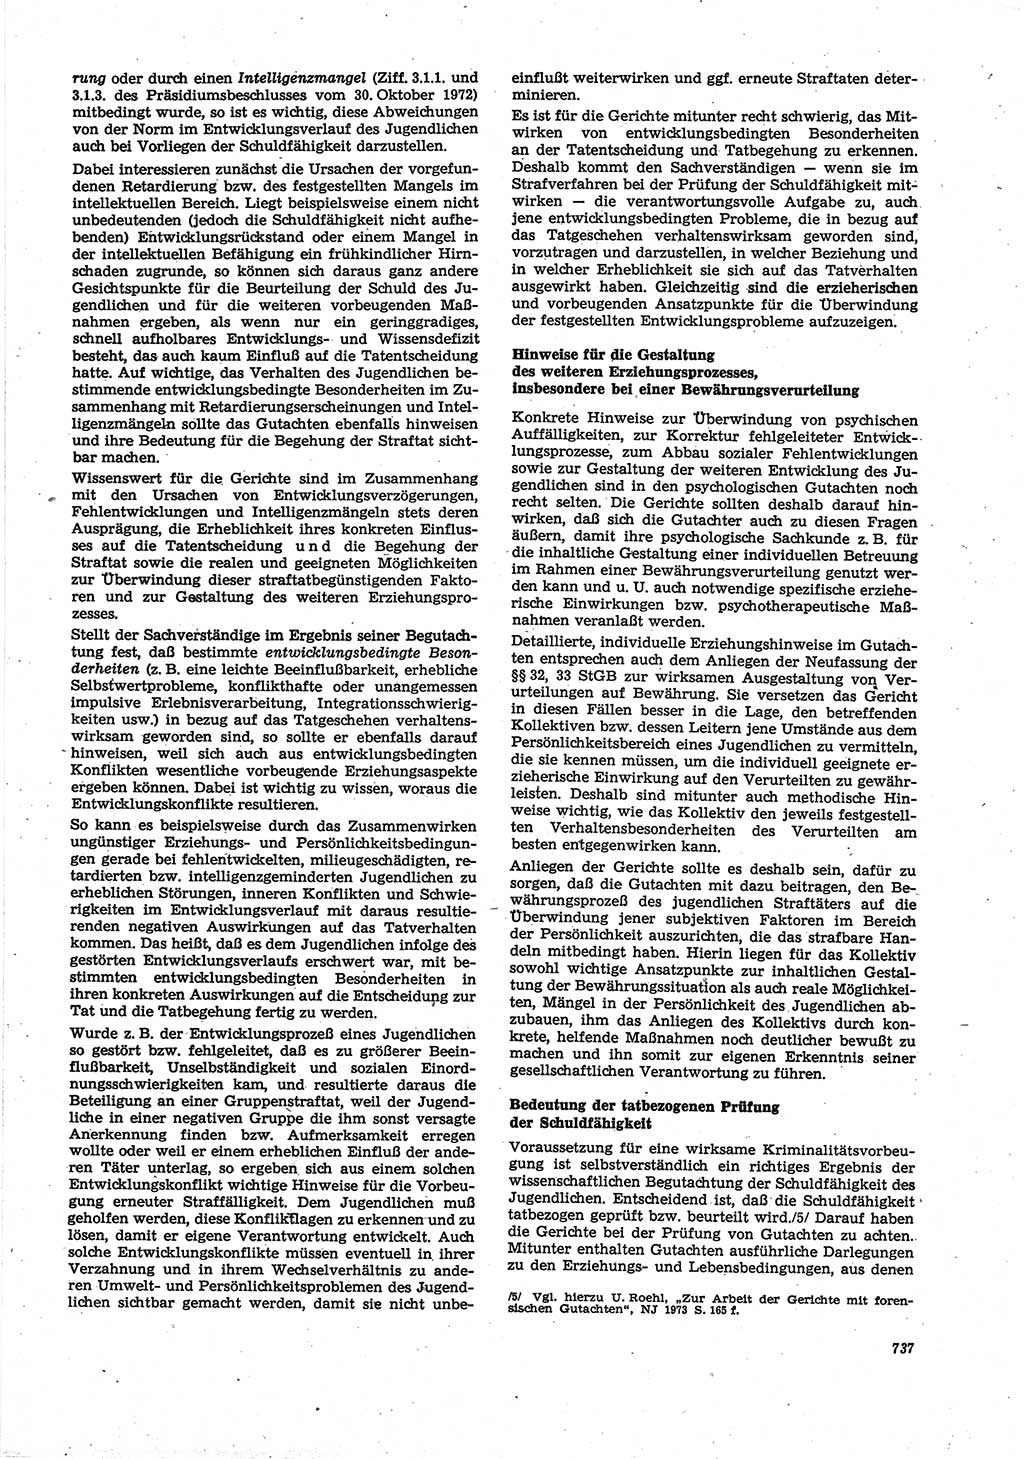 Neue Justiz (NJ), Zeitschrift für Recht und Rechtswissenschaft [Deutsche Demokratische Republik (DDR)], 30. Jahrgang 1976, Seite 737 (NJ DDR 1976, S. 737)